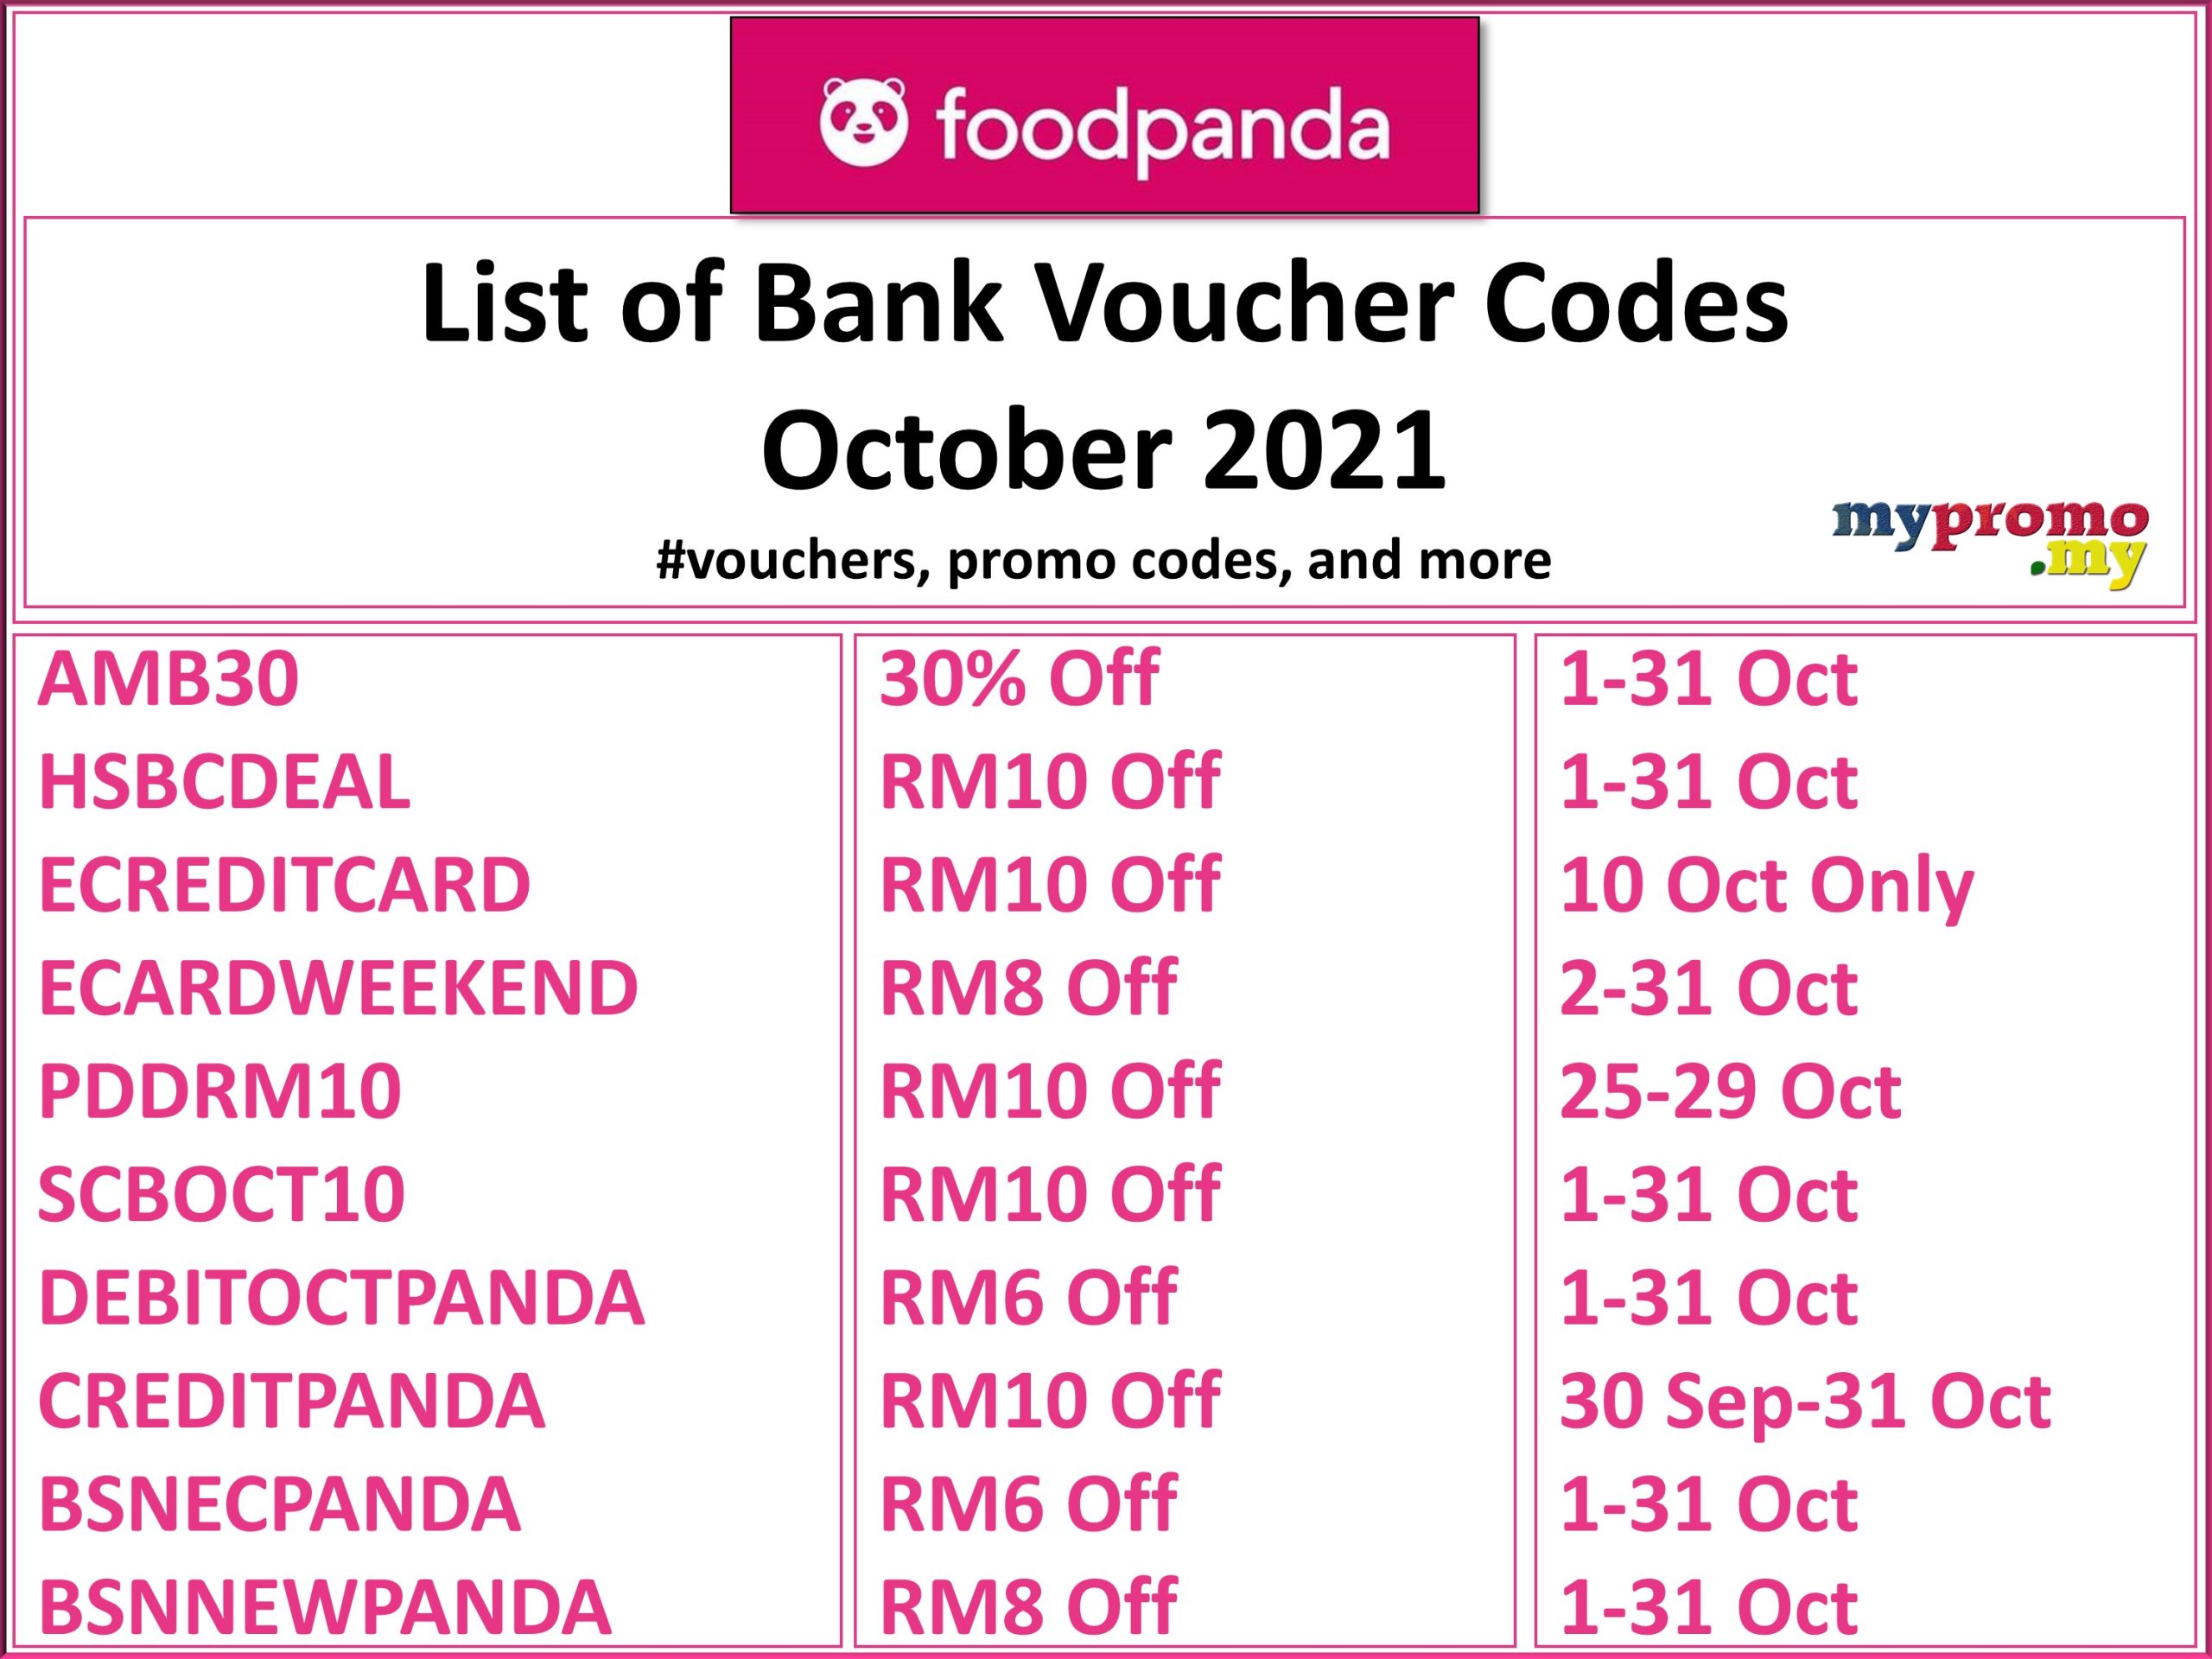 Food panda voucher october 2021